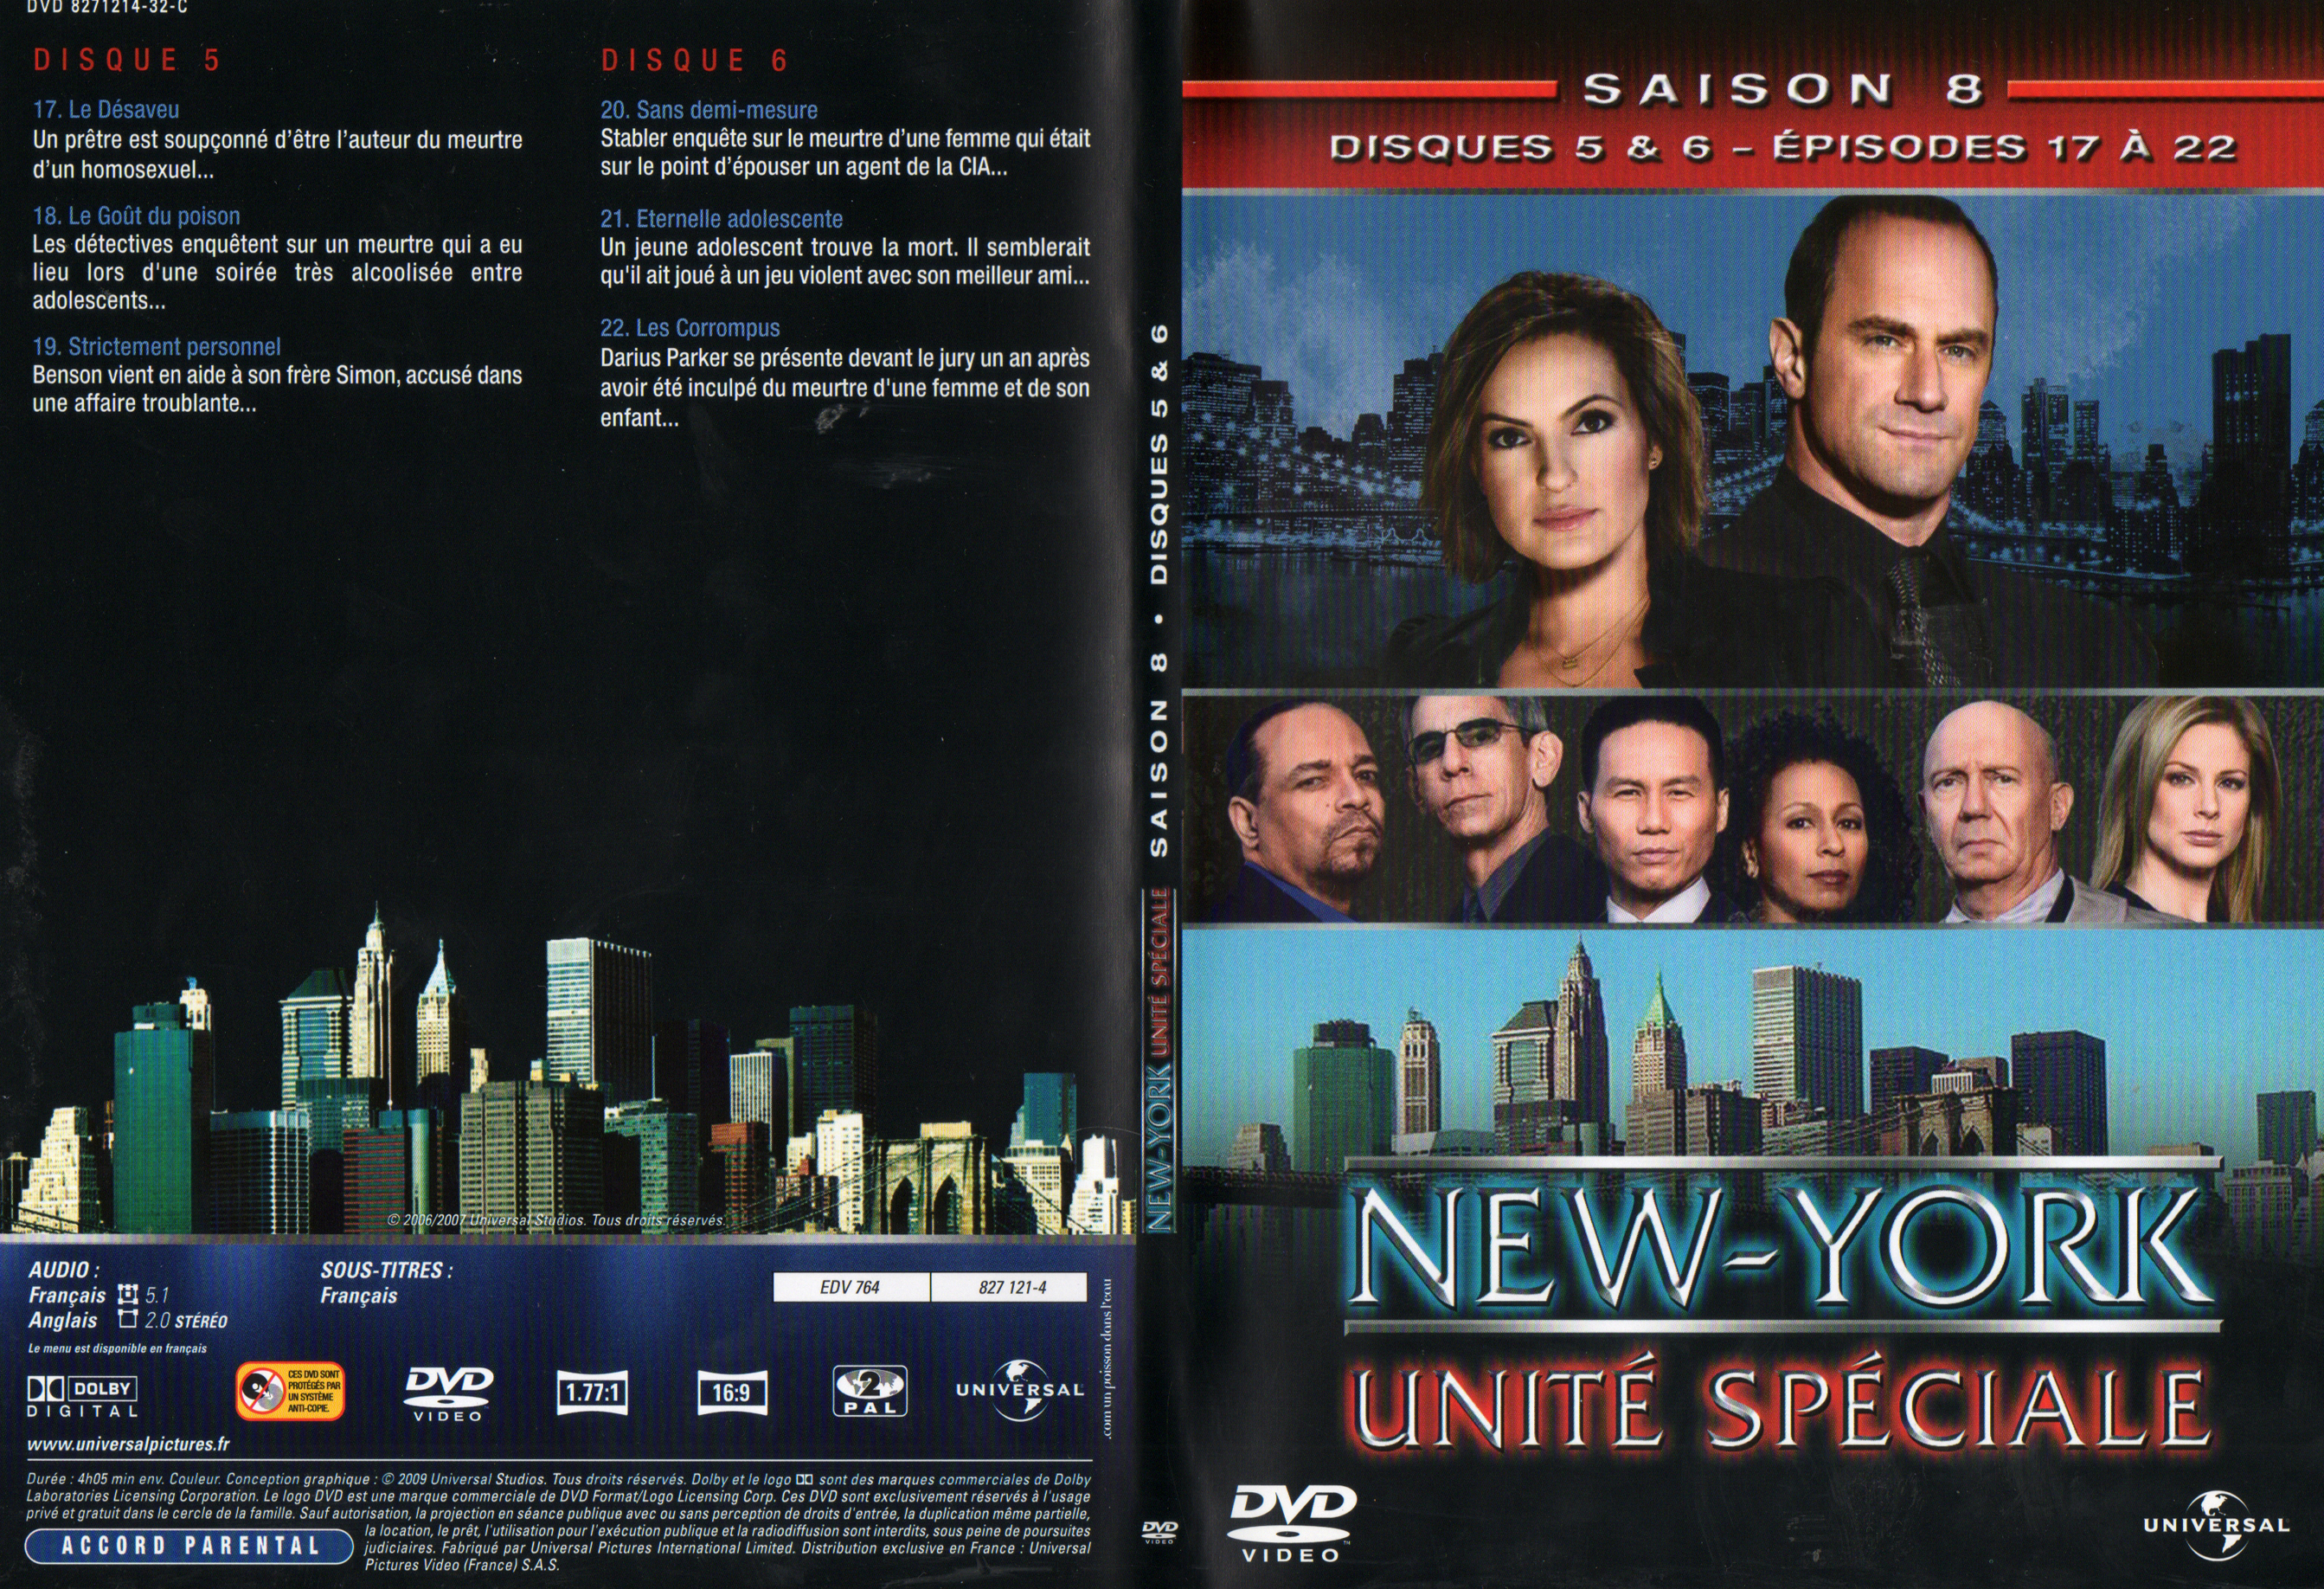 Jaquette DVD New York unit spciale saison 8 DVD 3